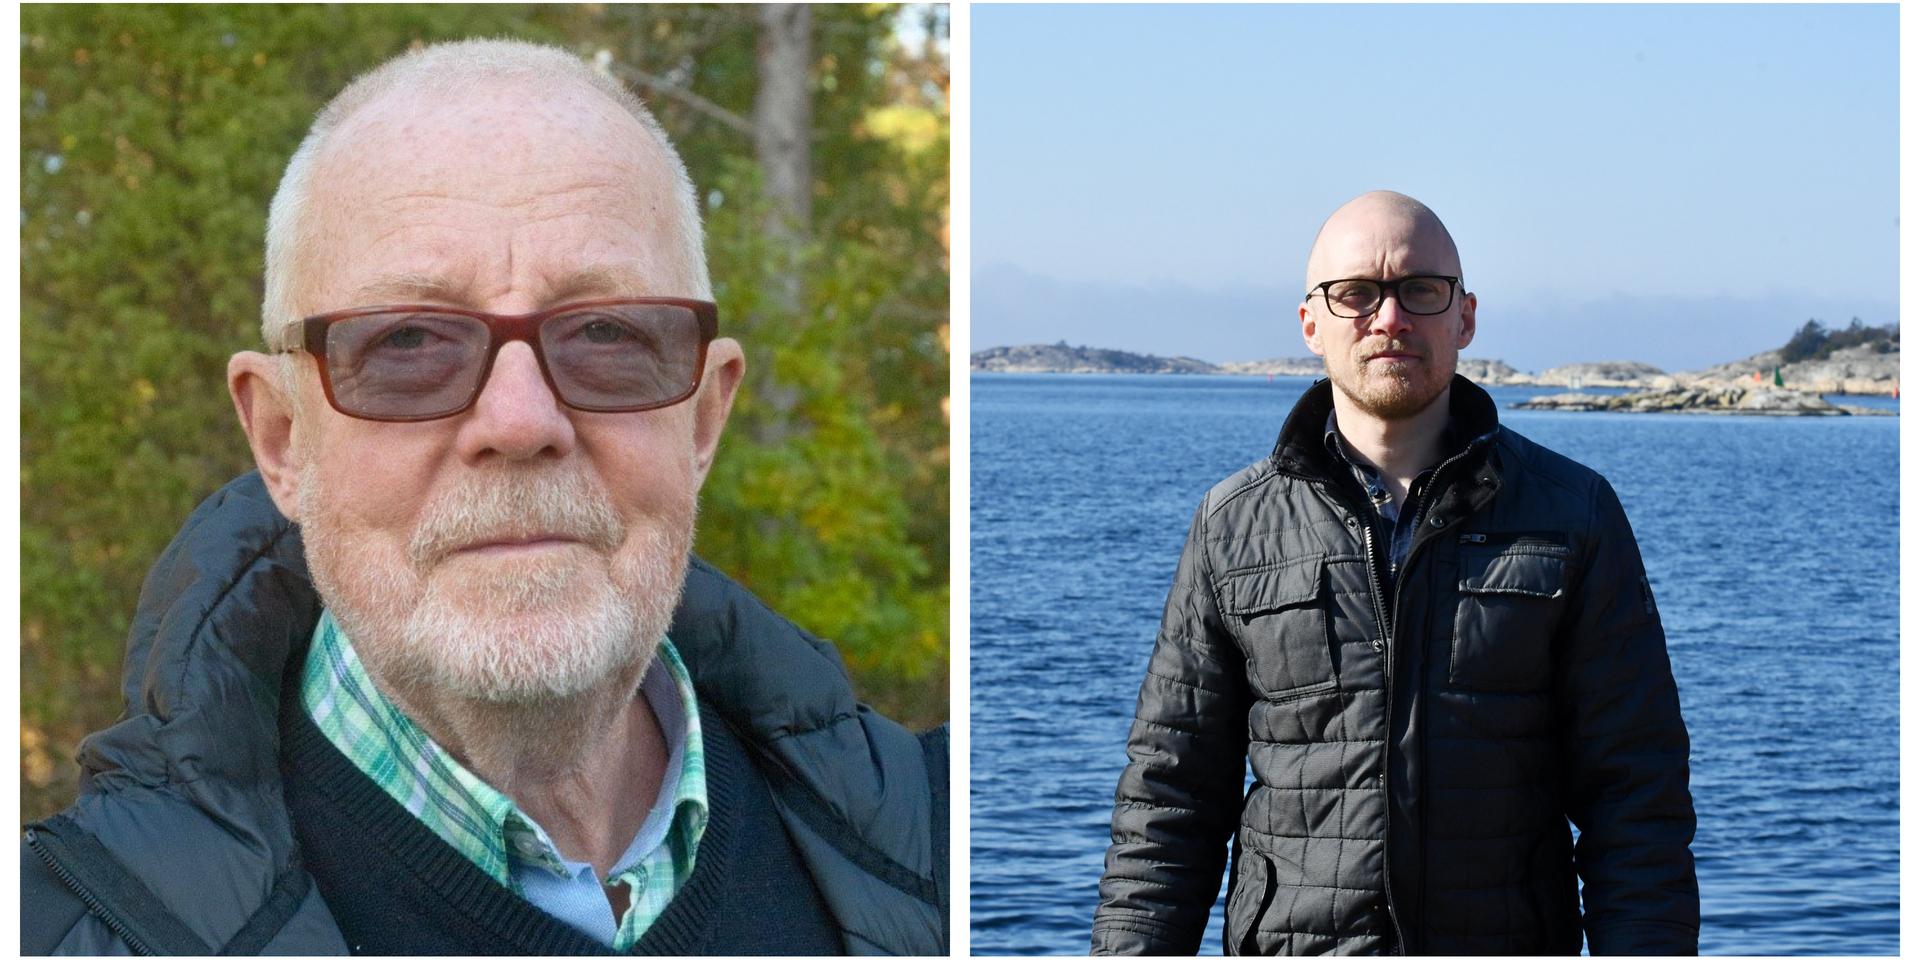 Centerpartisterna från Strömstad, Tore Lomgård och Andreas Hansson, skriver insändare ihop med Rickard Nordin, klimat- och energipolitisk talesperson.